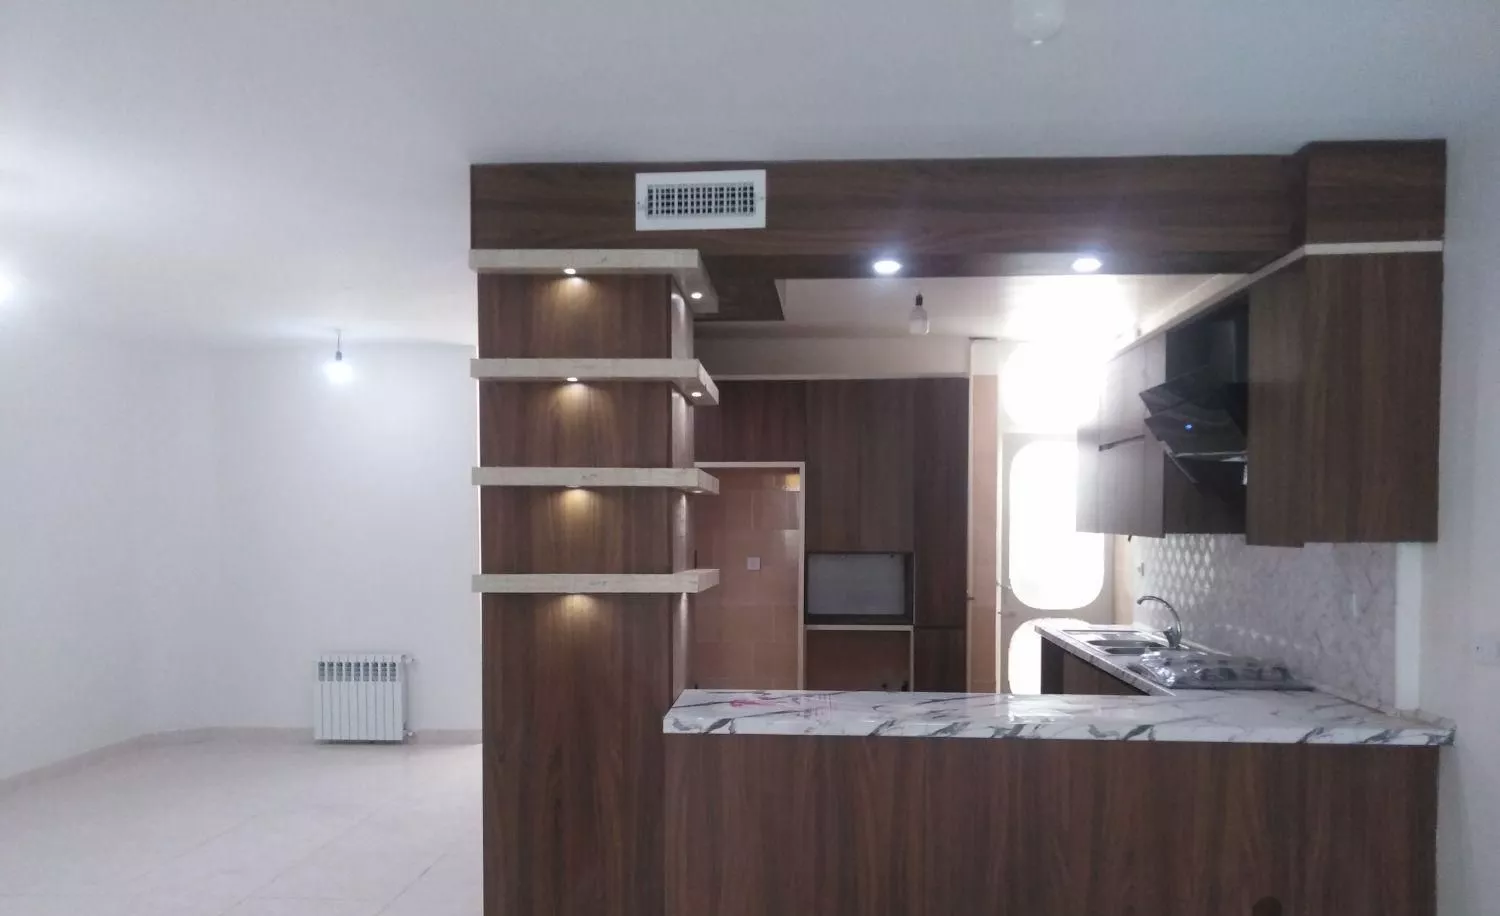 آپارتمان 130 متر مربع 2 خواب در تهرانپارس